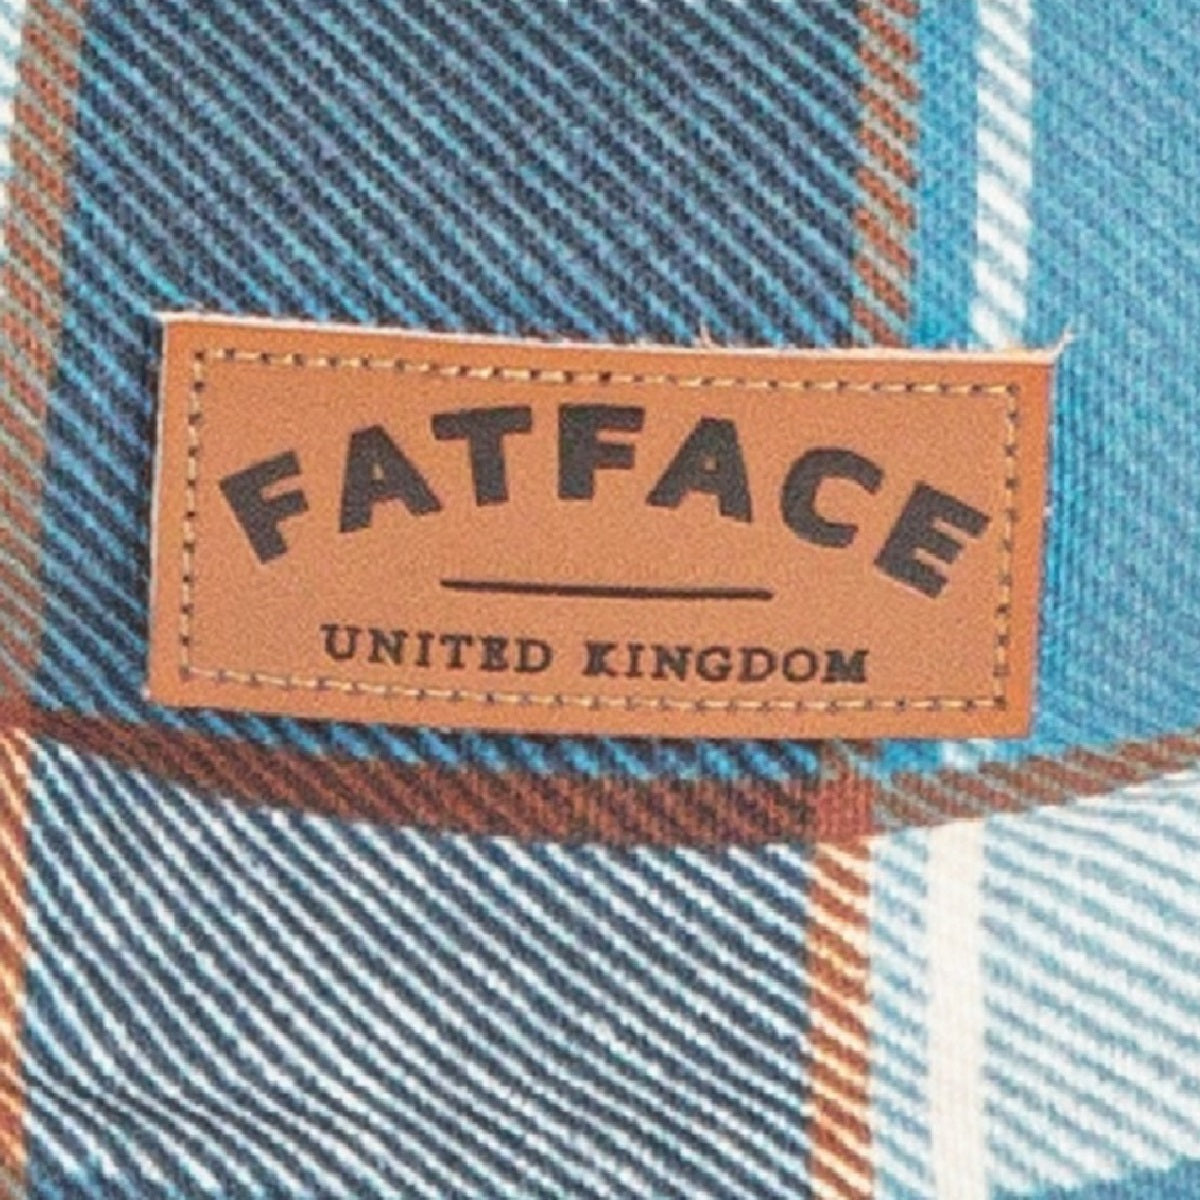 FATFACE - Fleece Check Slumber Bed